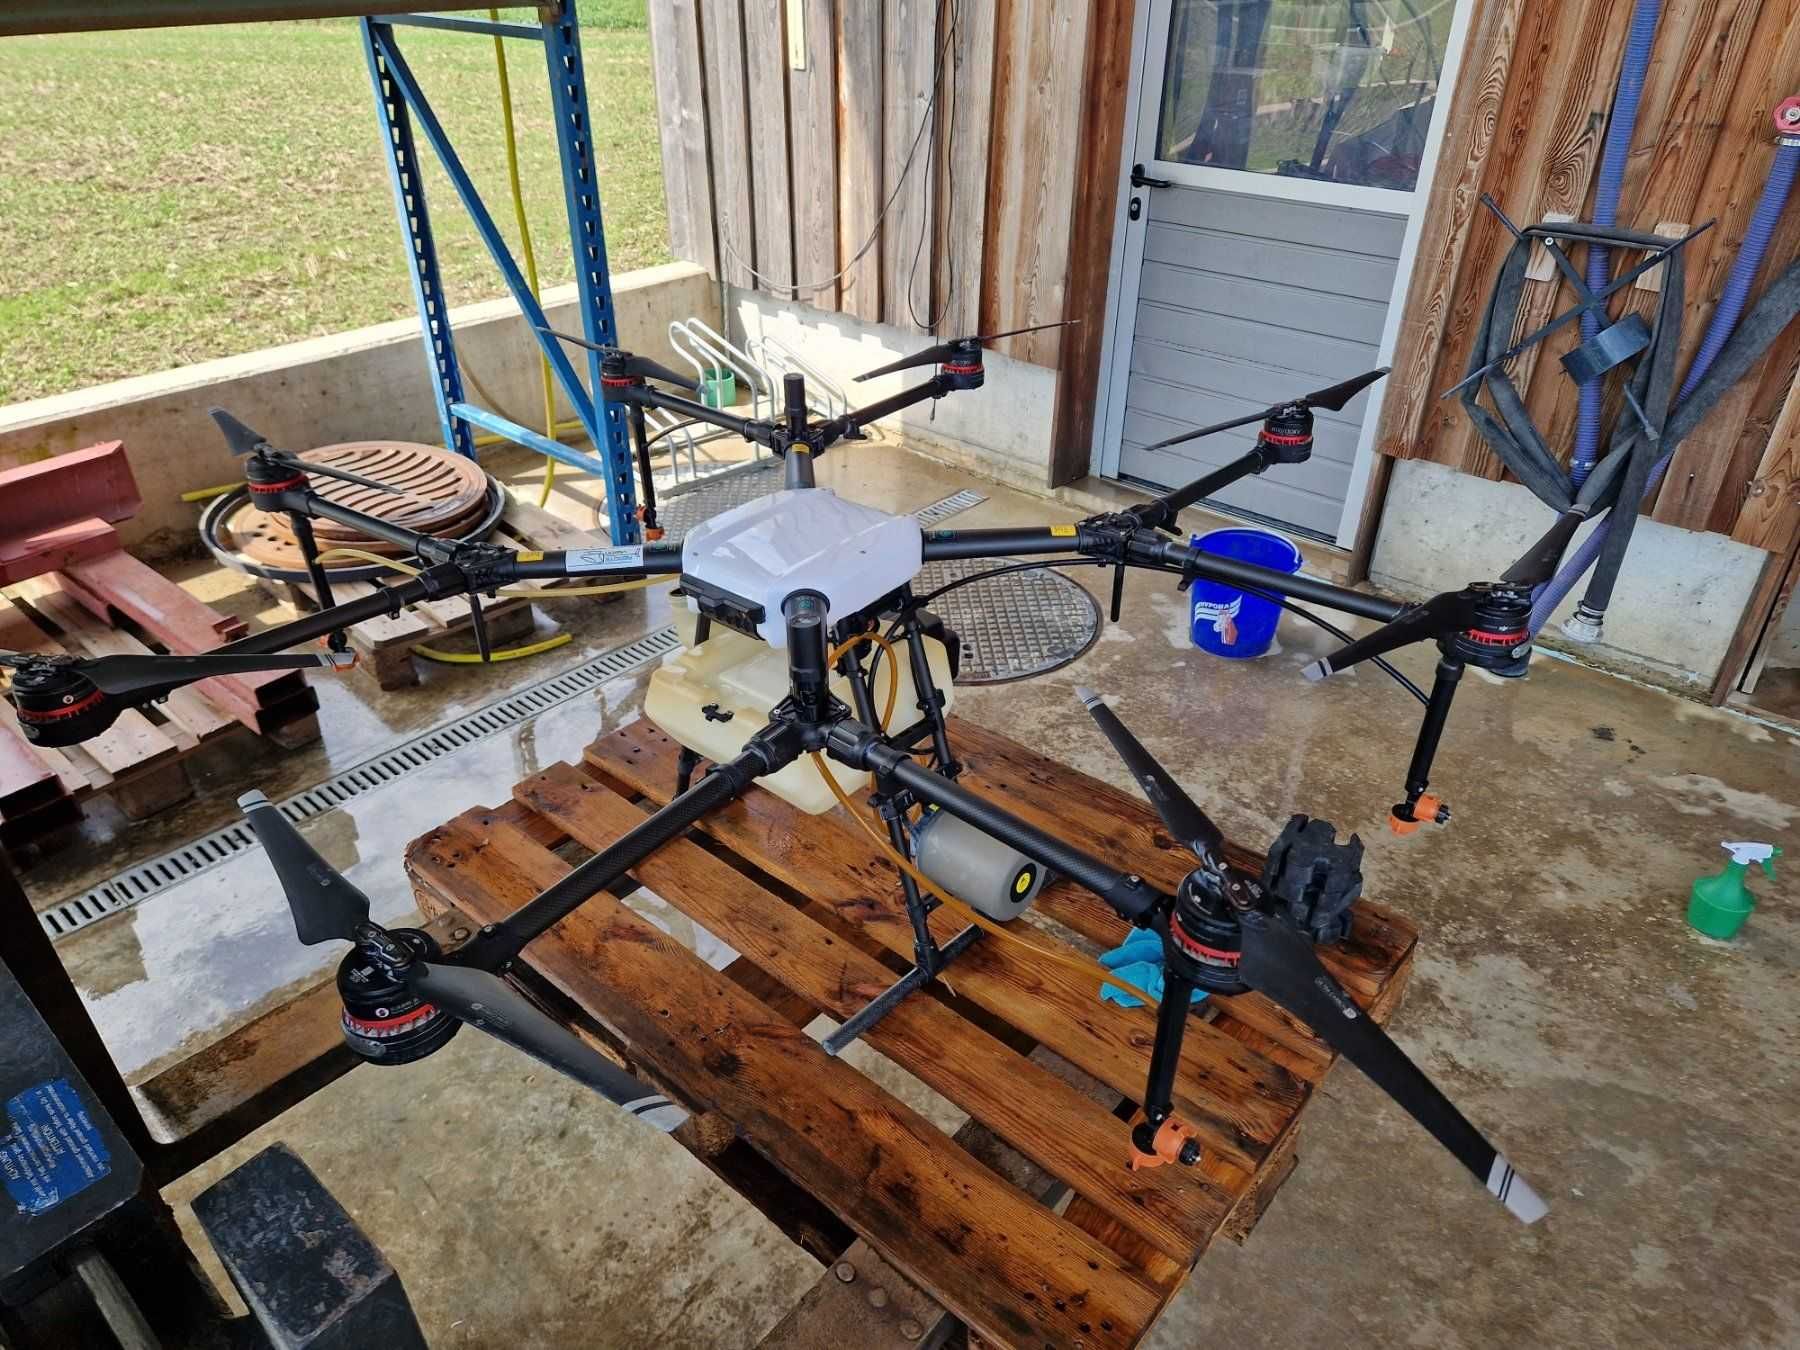 DJI Agras MG-1P RTK dron do oprysków rozsiewania nawozów wiele zadań